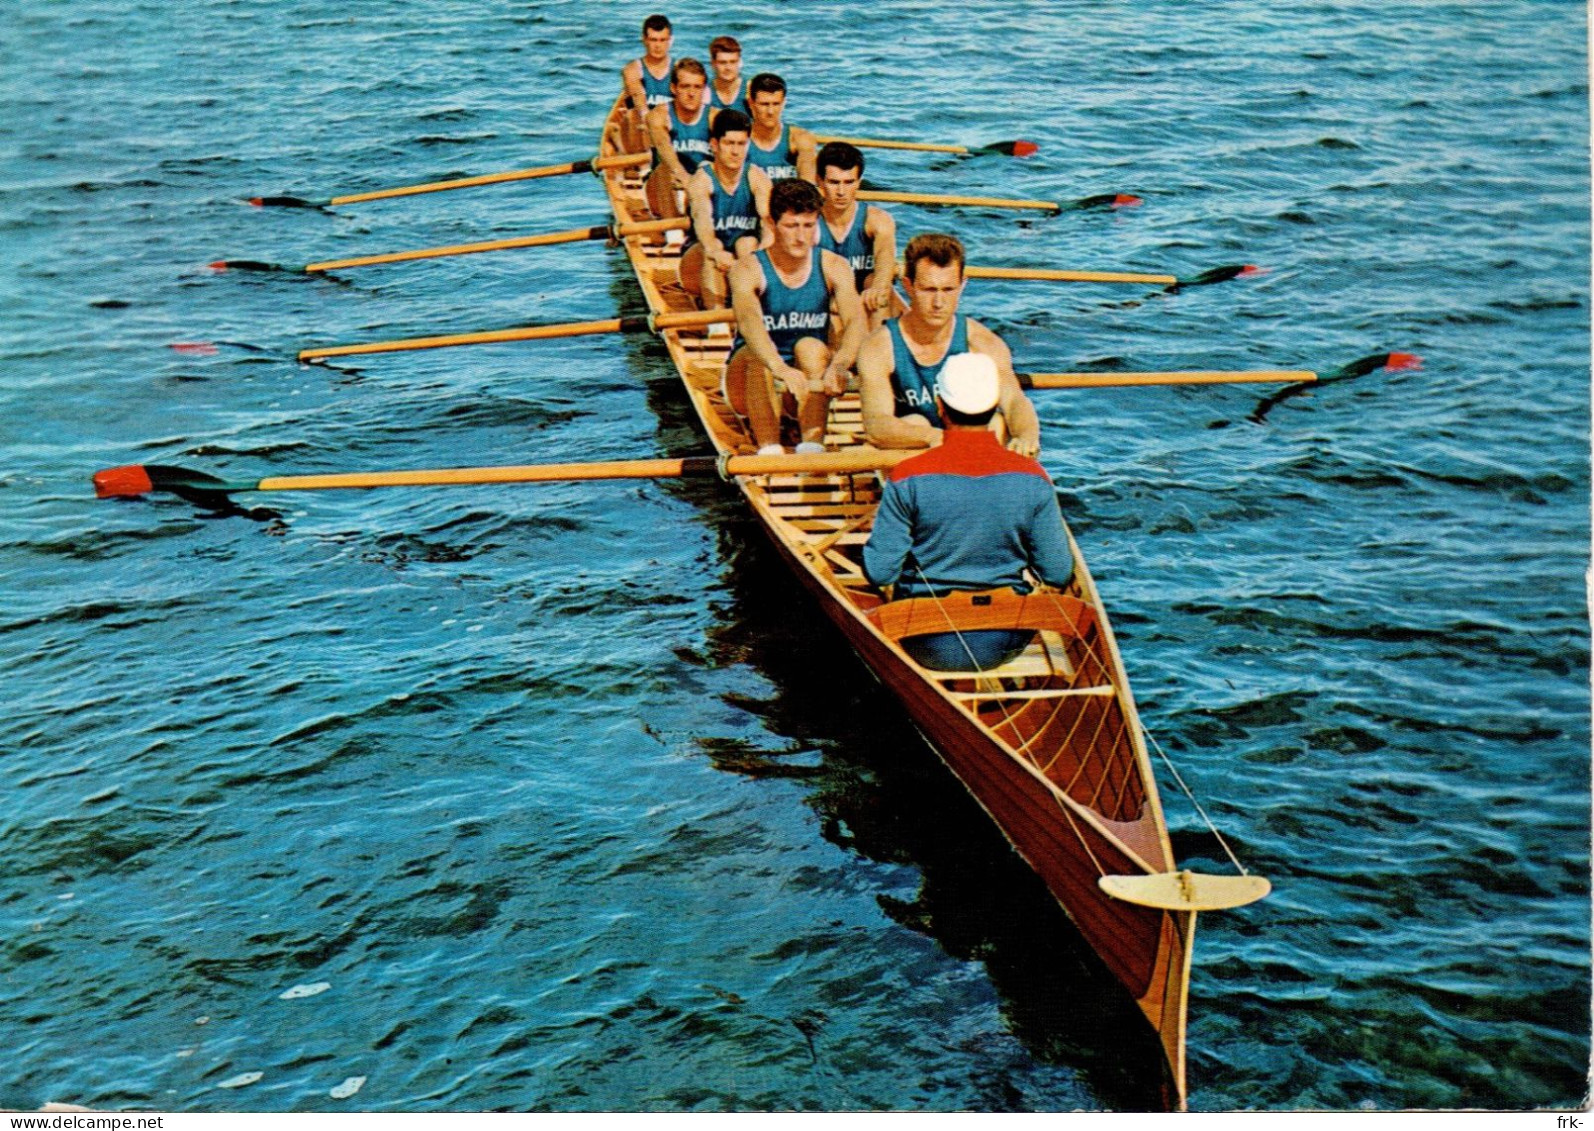 Carabinieri Canottieri - Rowing